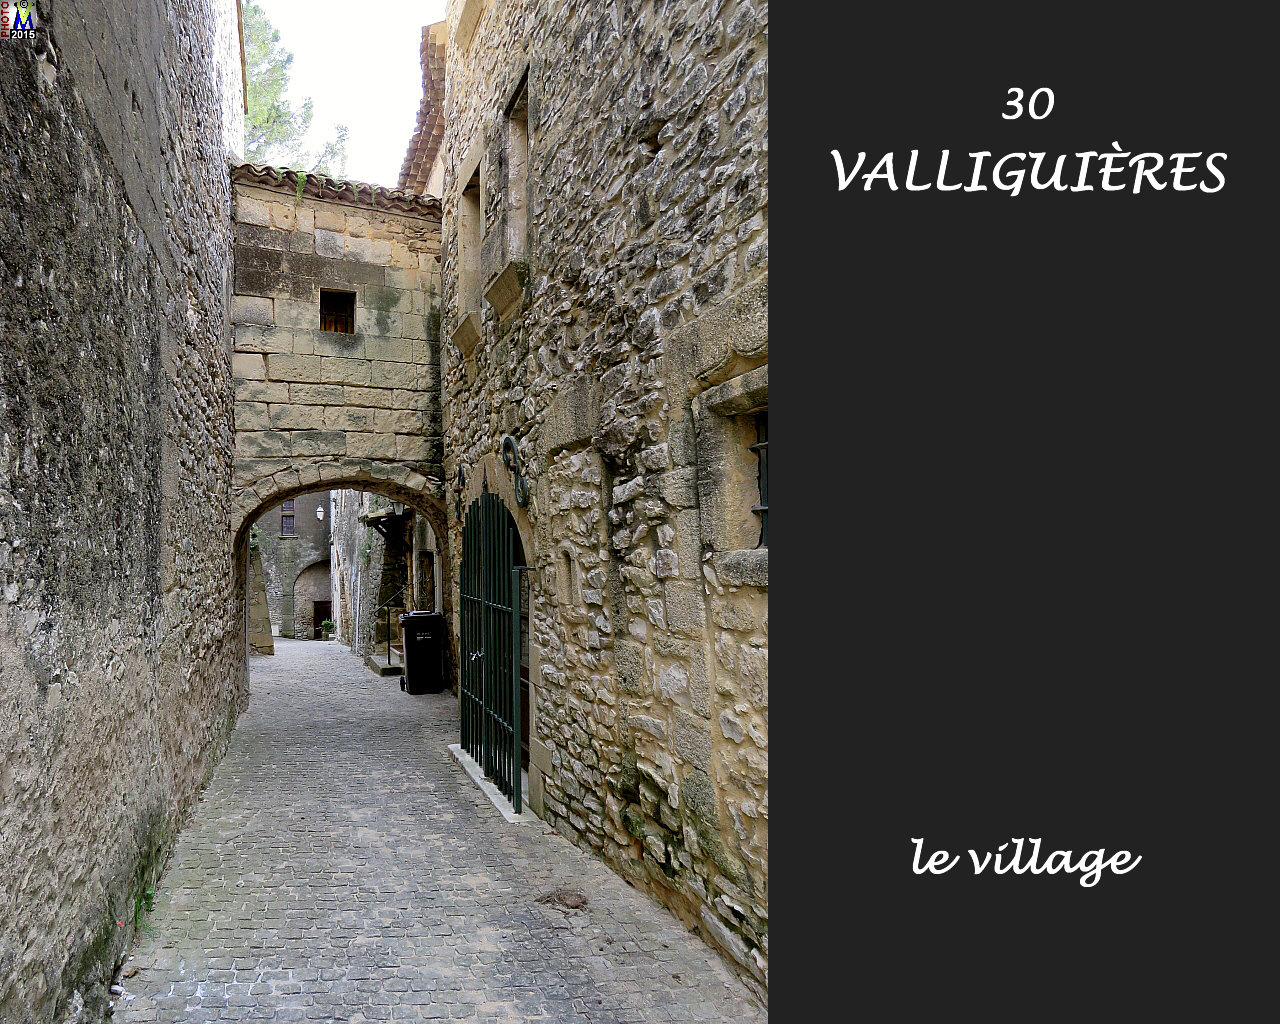 30VALLIGUIERES_village_114.jpg